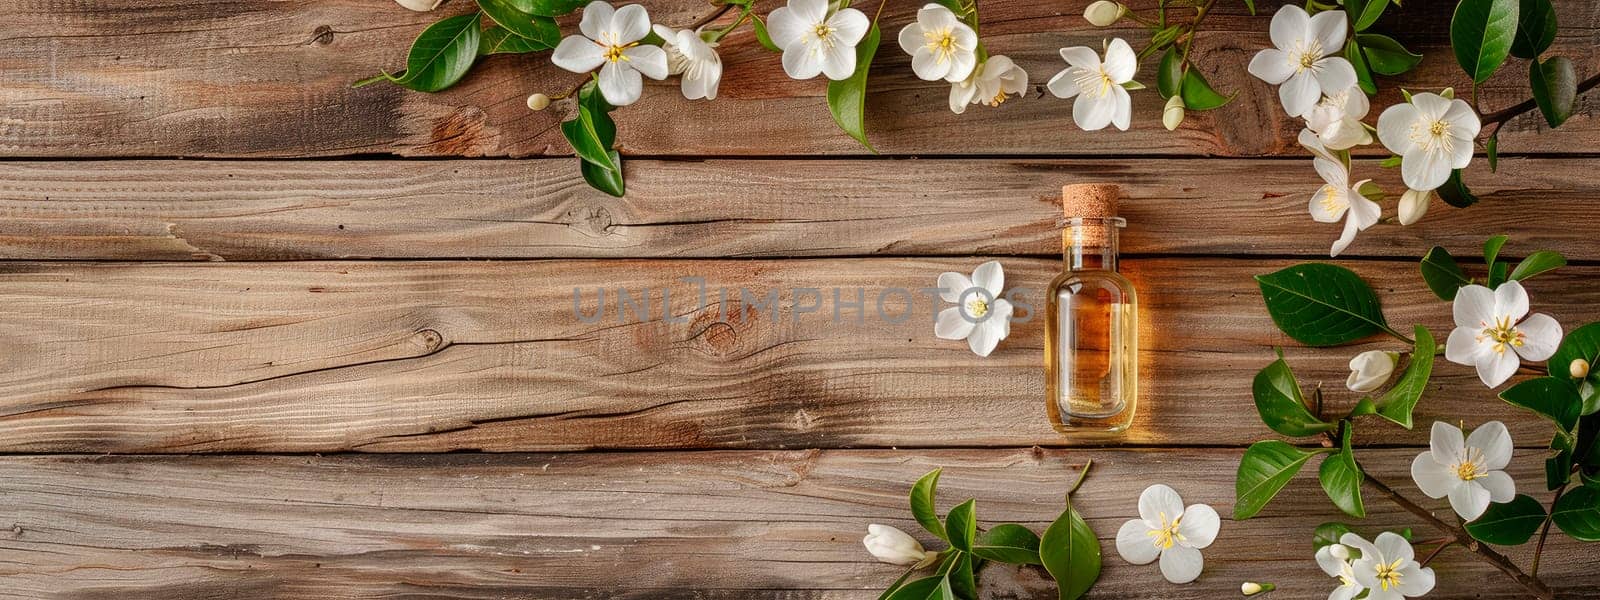 geranium essential oil in a bottle. Selective focus. Nature.